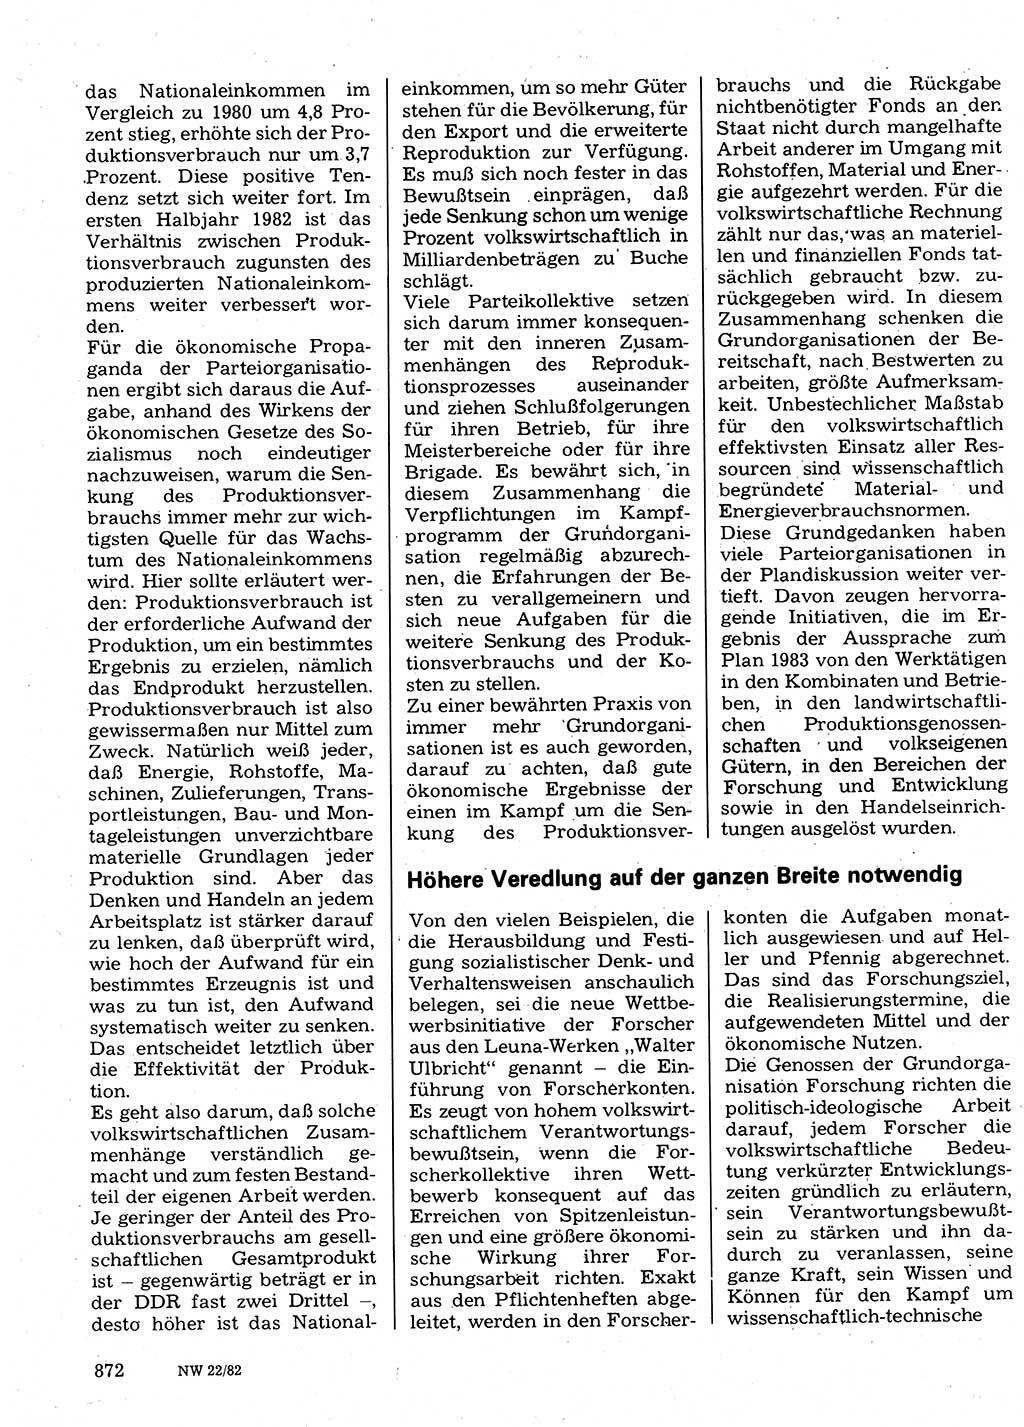 Neuer Weg (NW), Organ des Zentralkomitees (ZK) der SED (Sozialistische Einheitspartei Deutschlands) für Fragen des Parteilebens, 37. Jahrgang [Deutsche Demokratische Republik (DDR)] 1982, Seite 872 (NW ZK SED DDR 1982, S. 872)